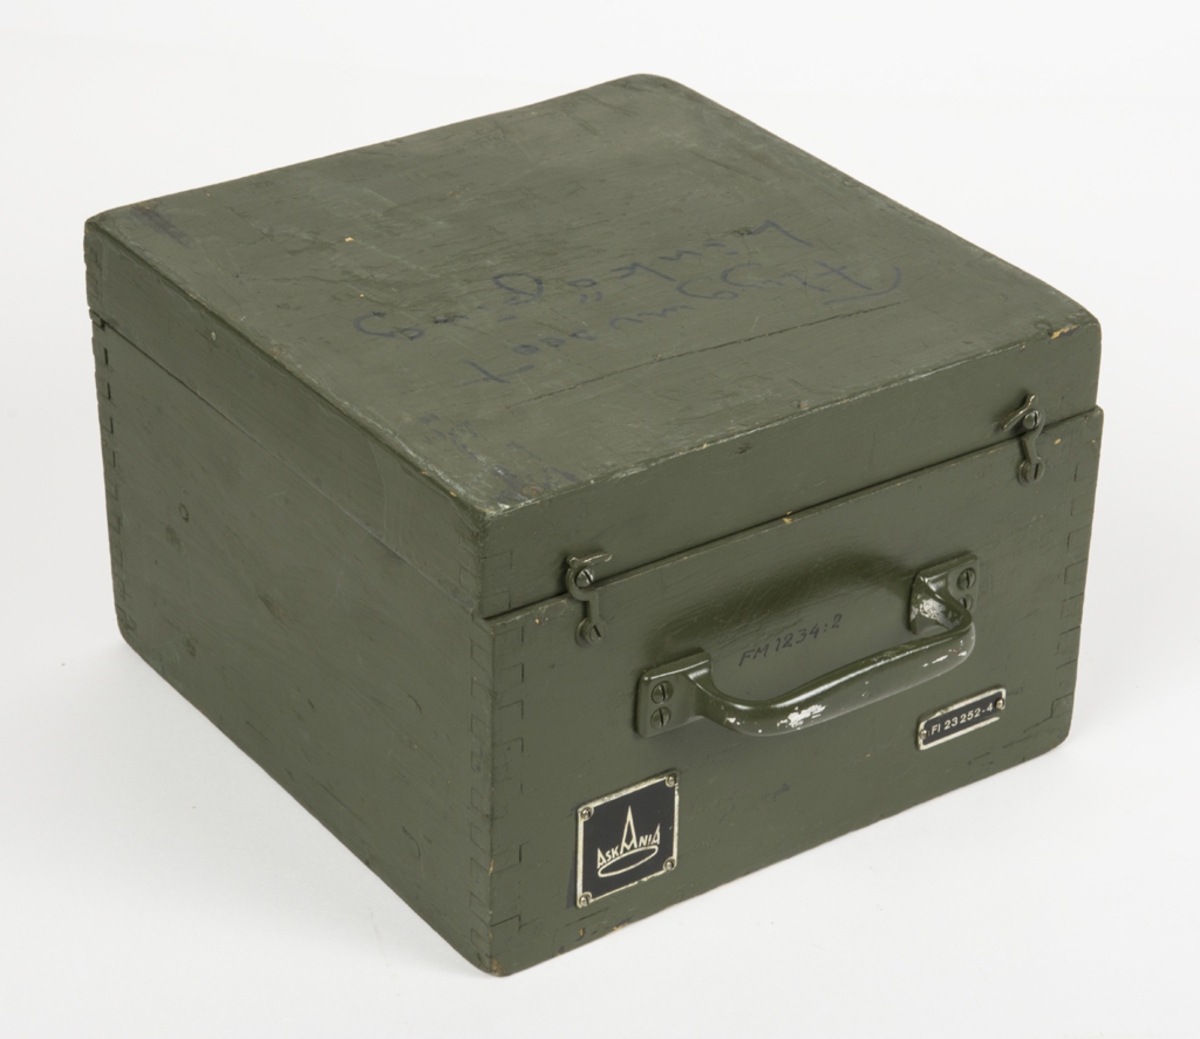 Askania devieringsinstrumentet för kompasser. Förvaras i en grön trälåda. I locket finns en fastklistrad innehållsförteckning och bruksanvisning på tyska. Lådan är försedd med ett bärhandtag. I lådan ligger även fastsättningsanordning.